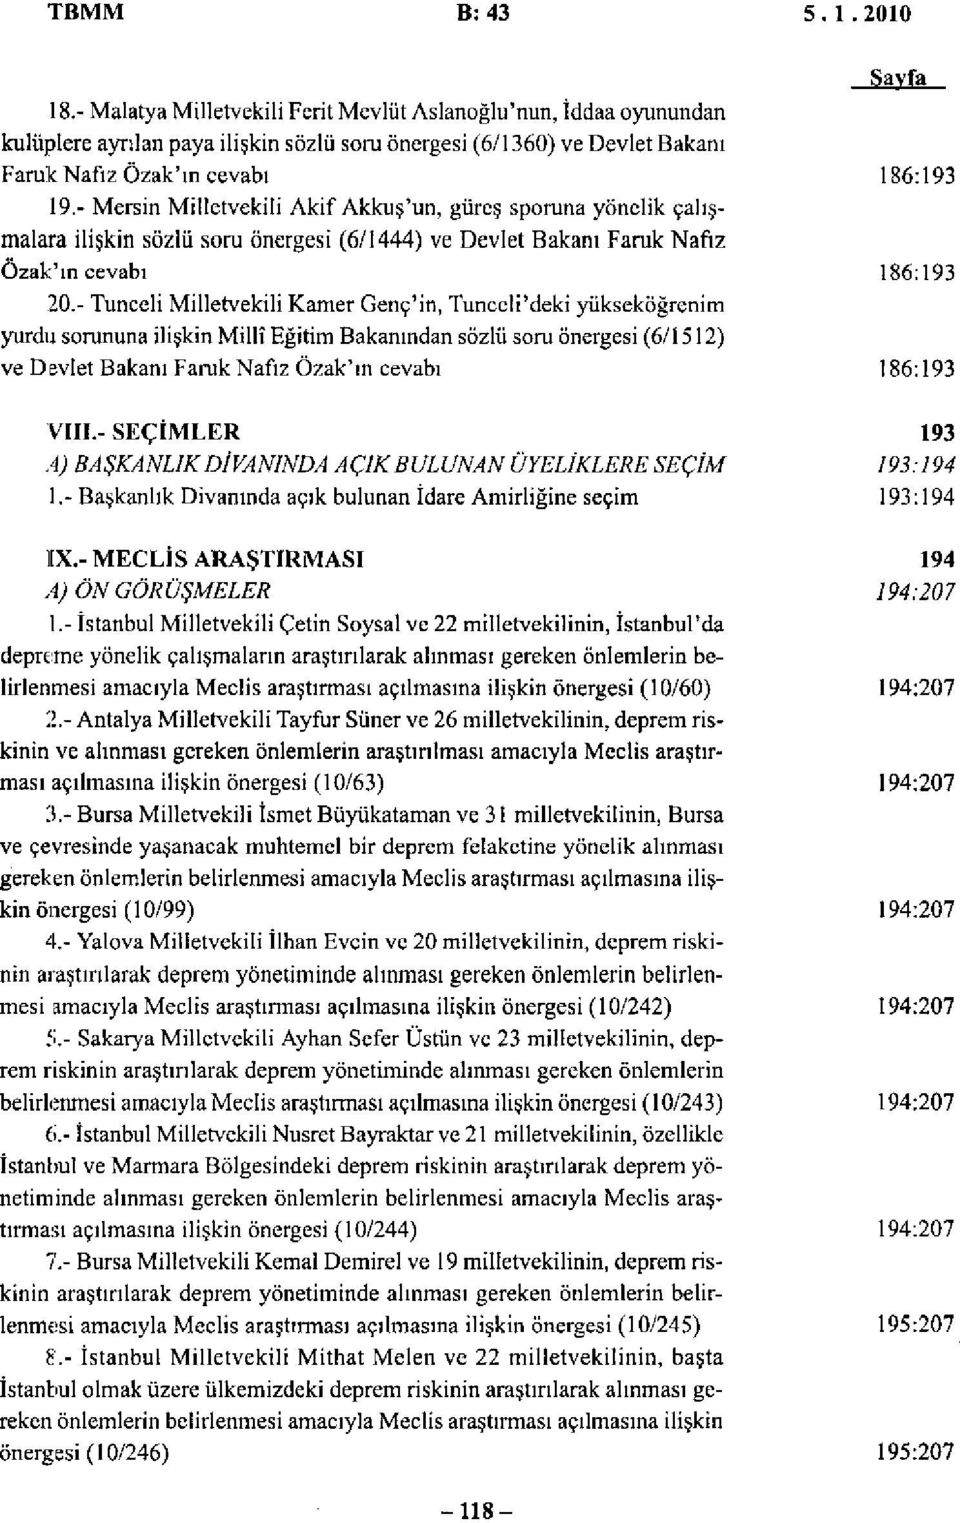 - Tunceli Milletvekili Kamer Genc'in, Tunceli'deki yükseköğrenim yurdu sorununa ilişkin Millî Eğitim Bakanından sözlü soru önergesi (6/1512) ve Devlet Bakanı Faruk Nafiz Özak'ın cevabı Sayfa 186:193